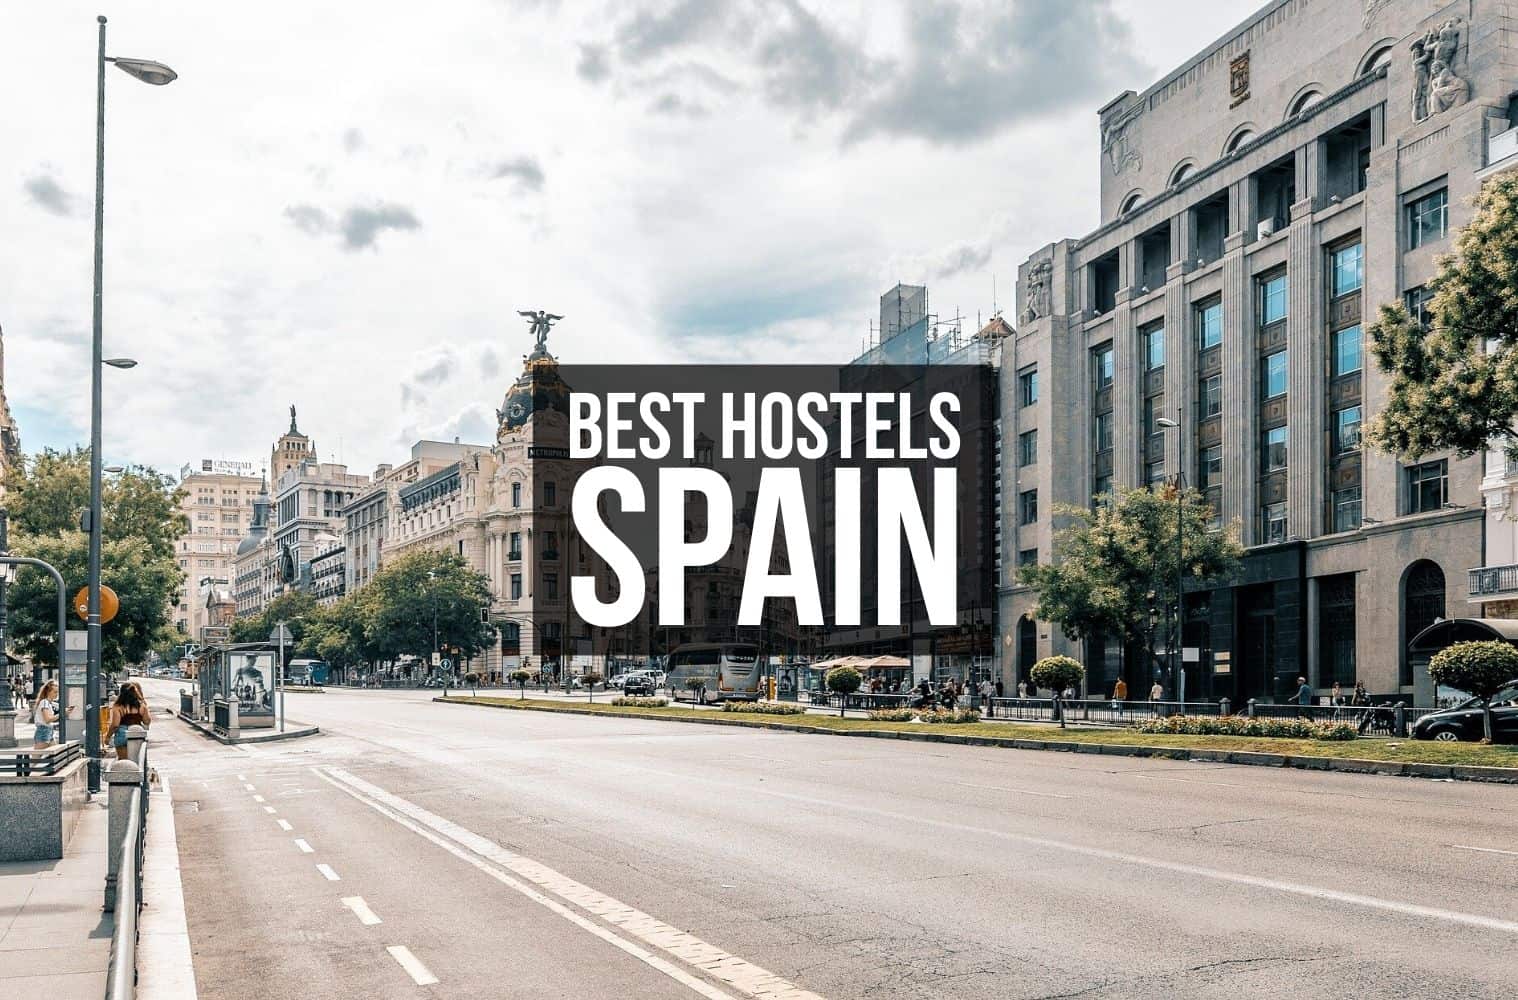 Best Hostels Spain